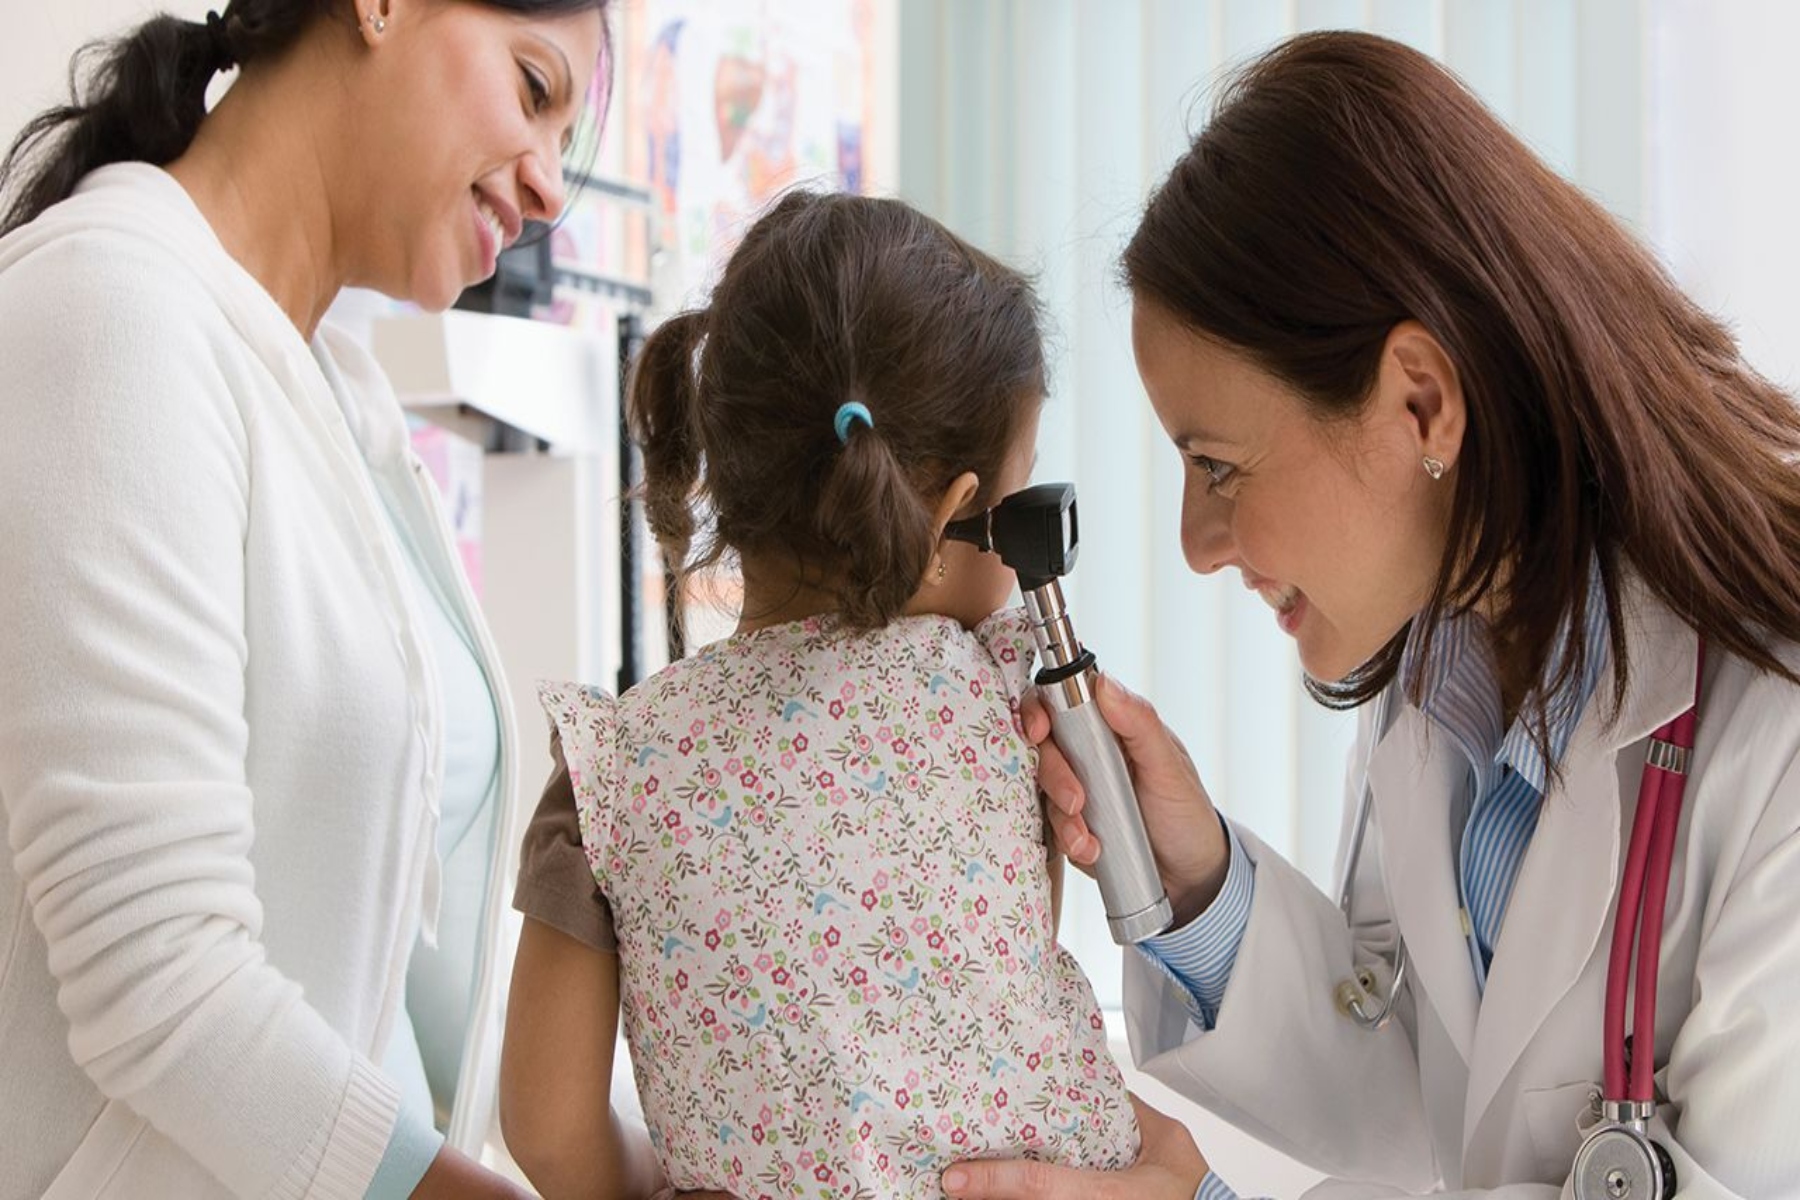 ΗΠΑ ασφάλιση παιδιά: 1 στα 3 παιδιά στις Ηνωμένες Πολιτείες χωρίς επαρκή ασφάλιση υγείας